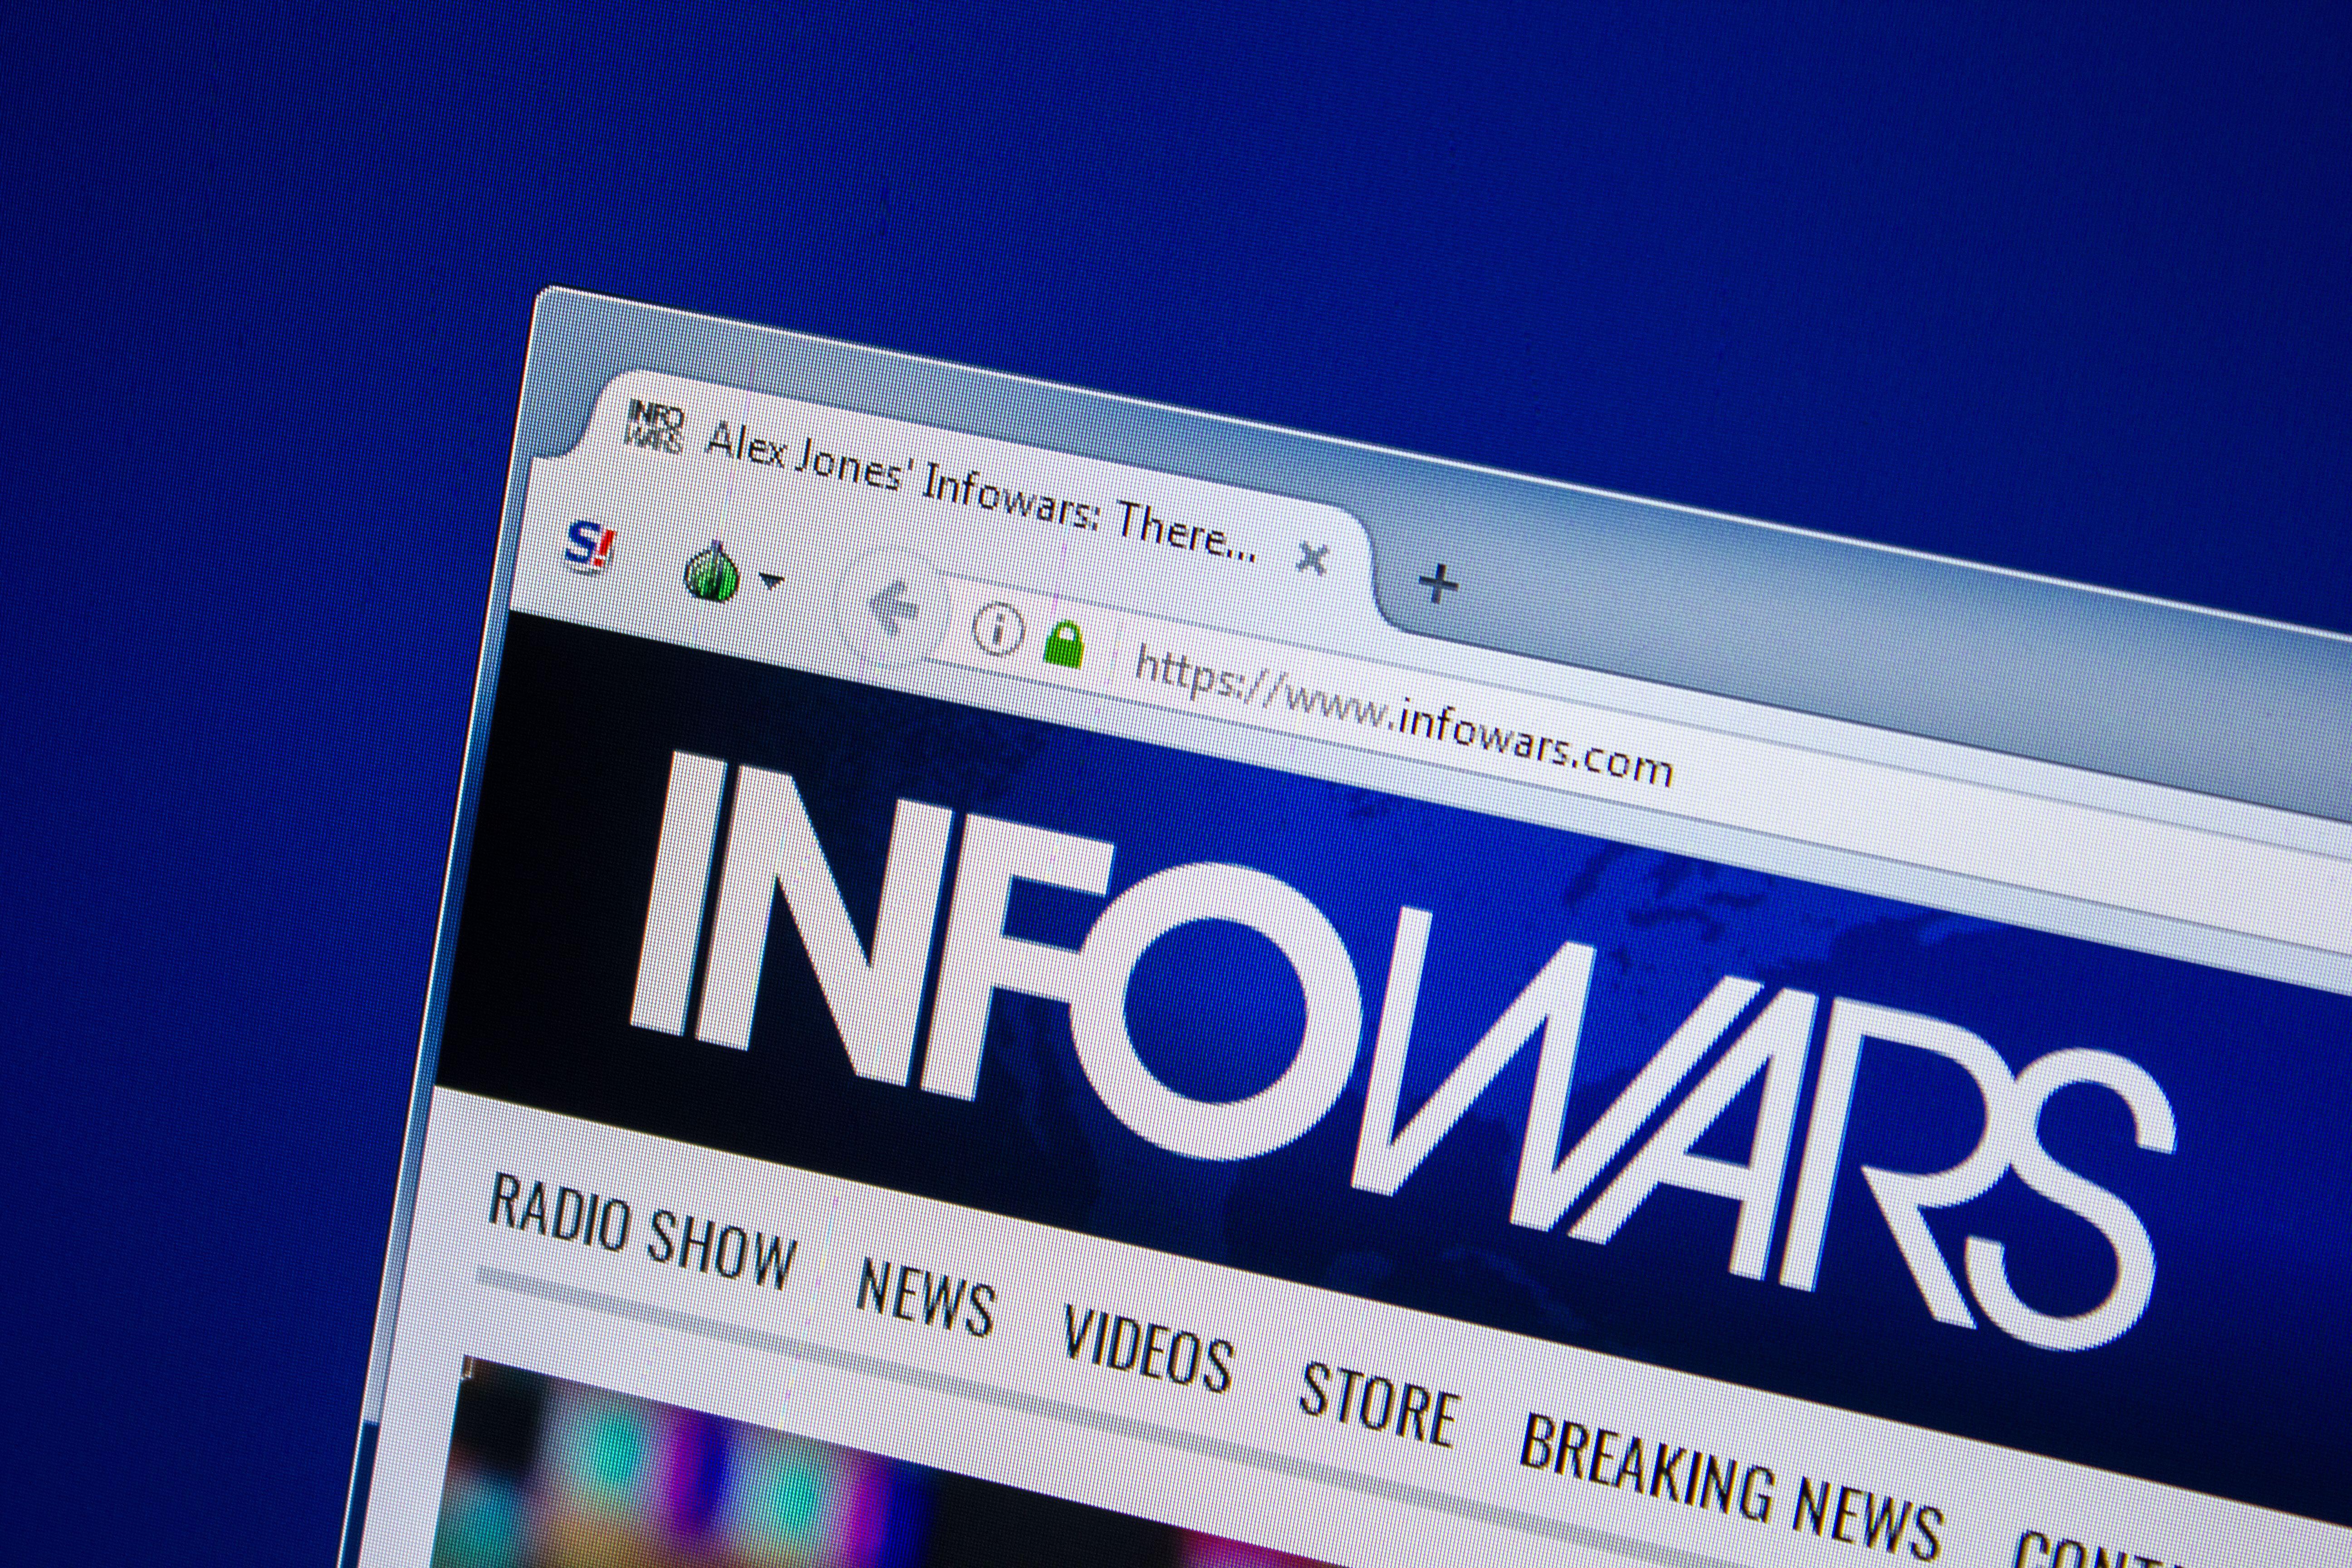 The Infowars website